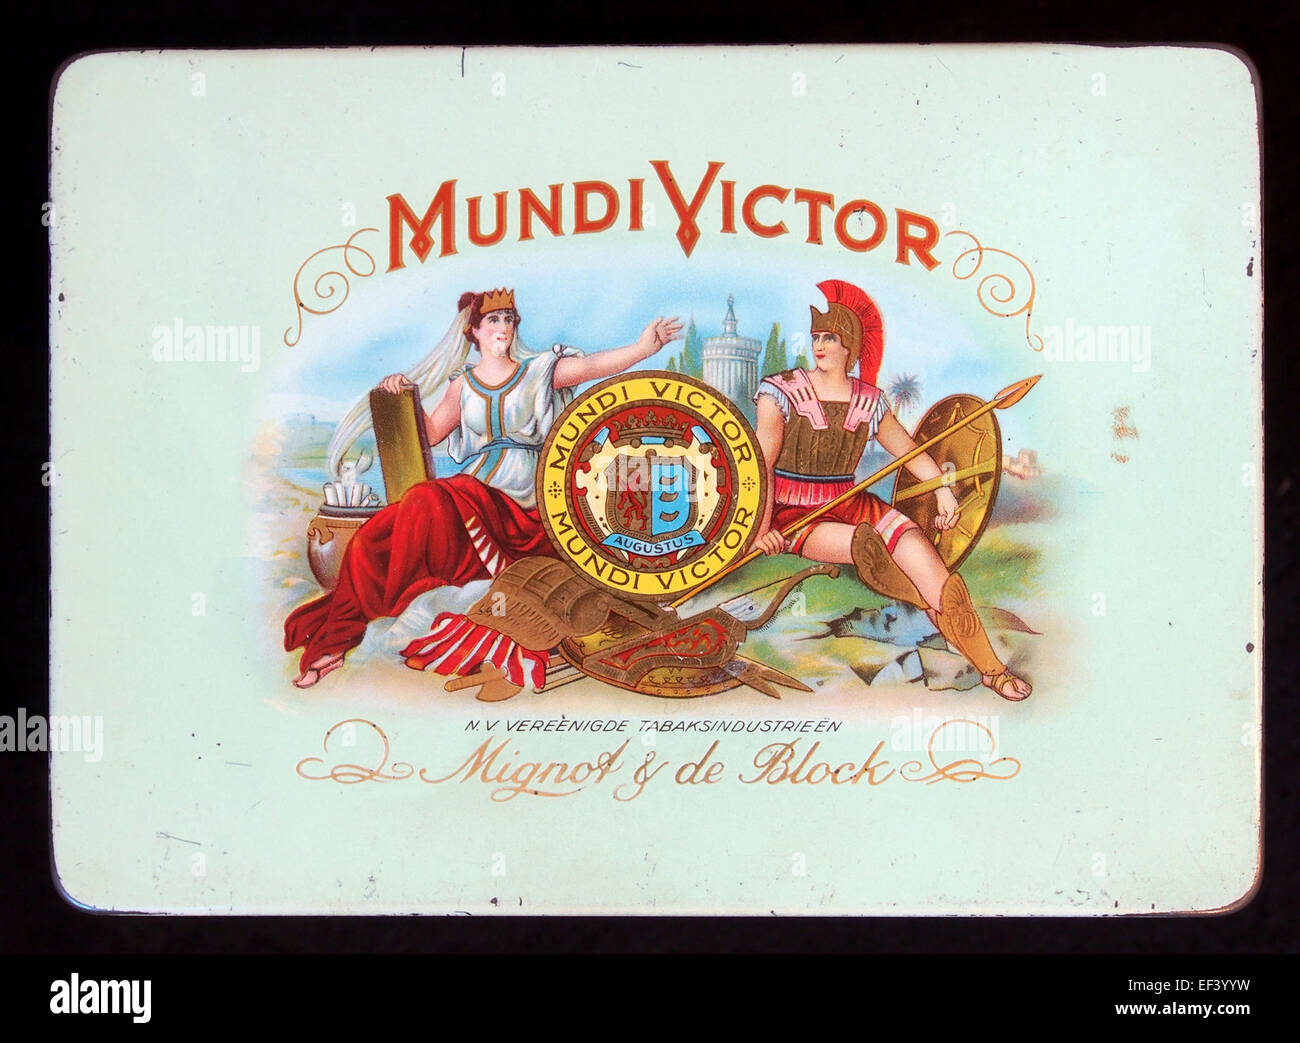 Mundi Victor sigarenblikje Foto Stock